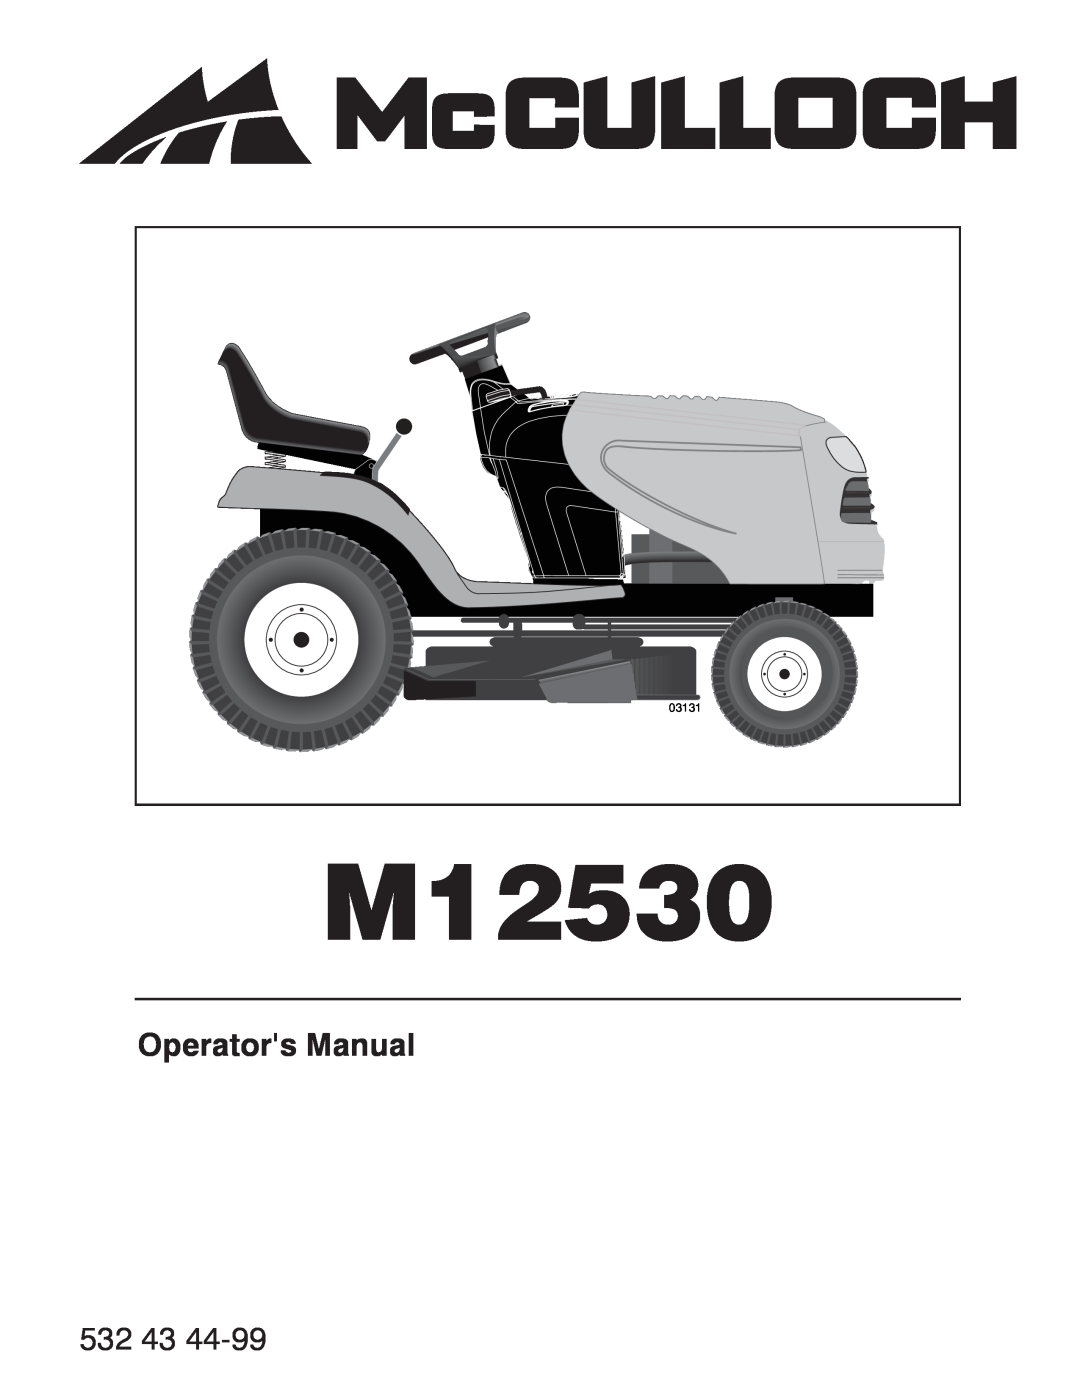 McCulloch 96041017600, 532 43 44-99 manual Operators Manual, M12530, 03131 